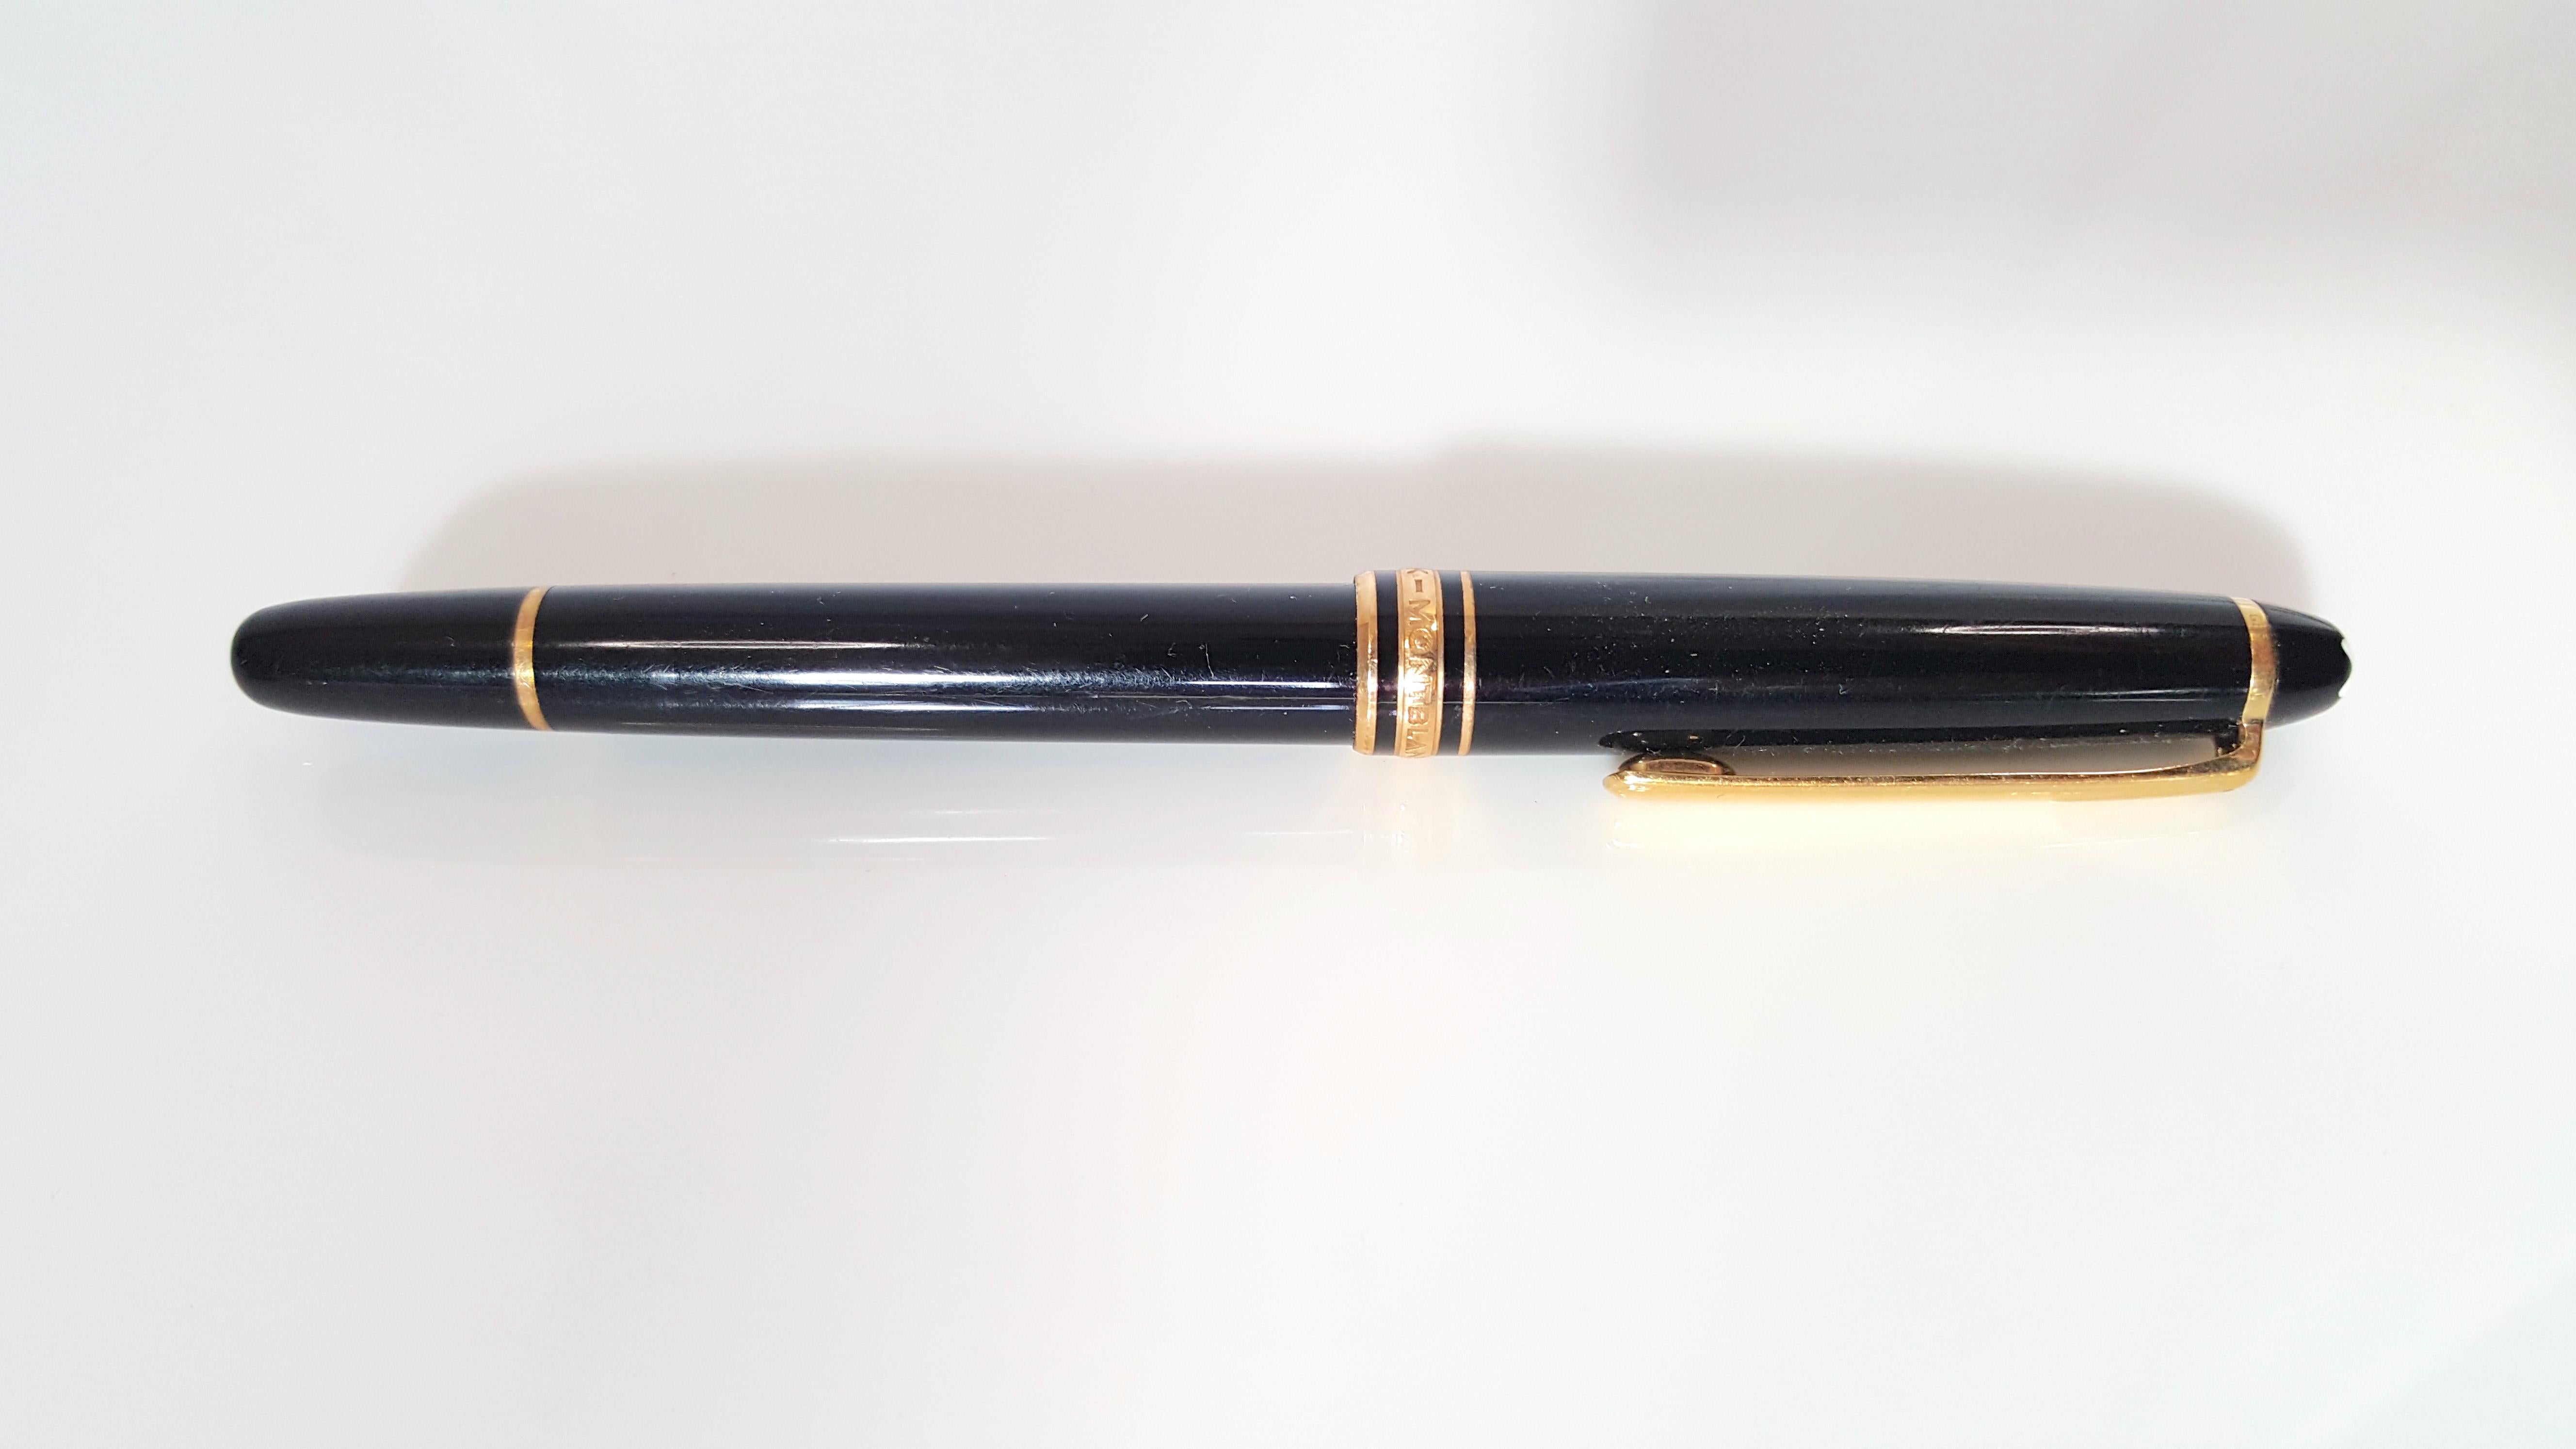 Dieser Meisterstuck Classique ist das bekannteste Schreibgerät aller Montblanc Collection'S. Er verfügt über sechs vergoldete Ringe und einen Clip auf dem schwarzen Rollerball-Kugelschreiber aus Kunstharz mit abziehbarer Kappe, einer einzigartigen